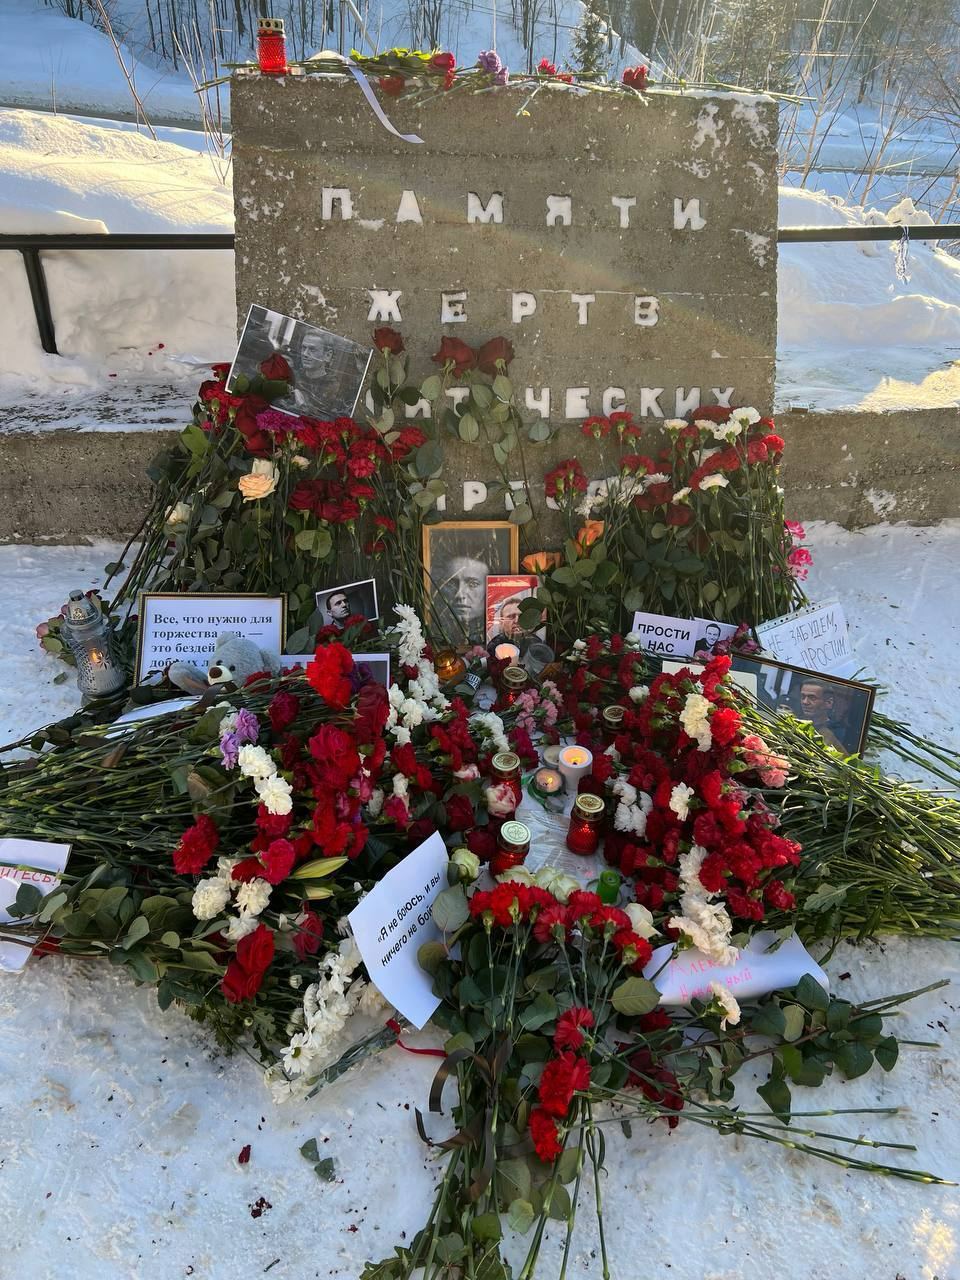 Ведущему, раскрывшему личные данные людей, которые приносили цветы в память о Навальном, грозит иск — юрист